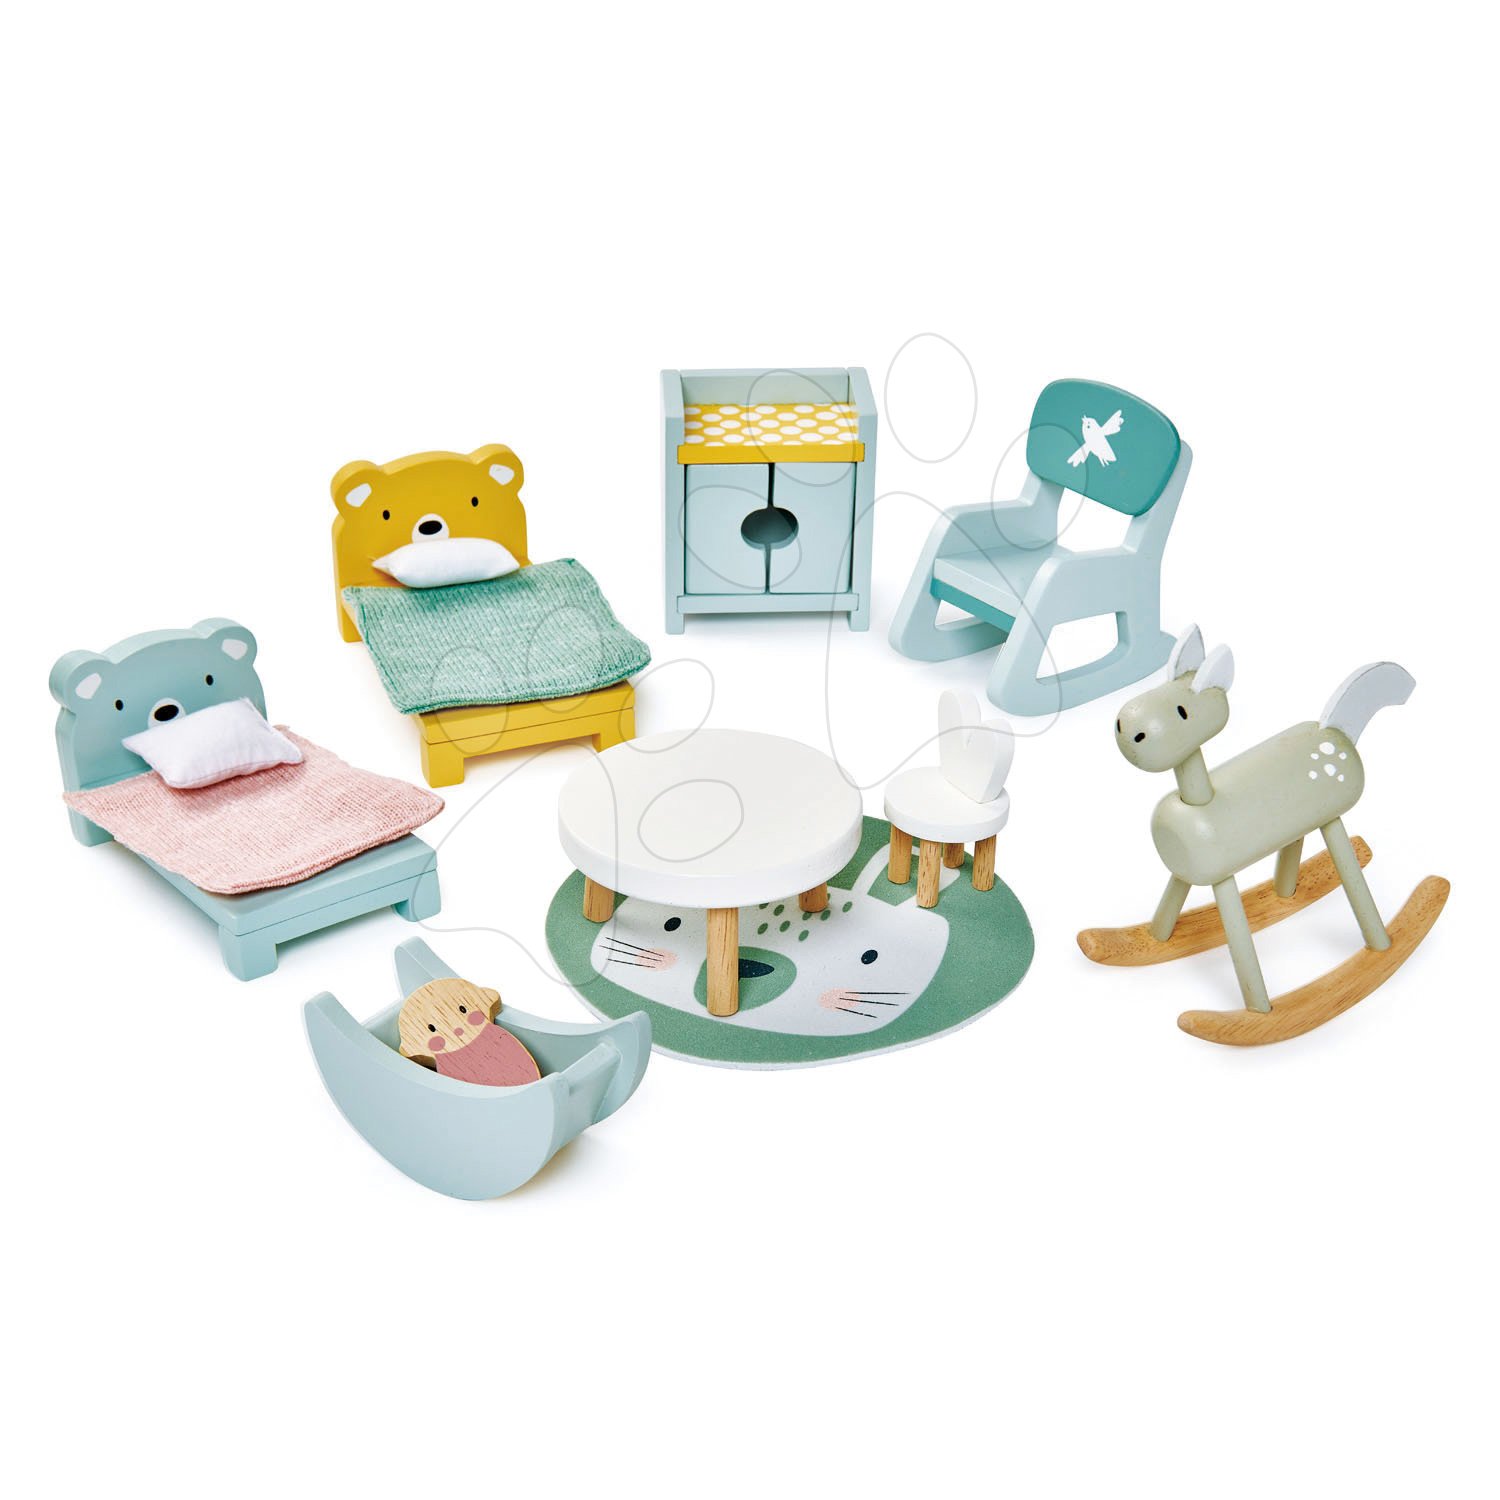 Fa gyerekszoba Dovetail Kidsroom Set Tender Leaf Toys 10 darabos készlet komplett felszereléssel és kiegészítőkkel